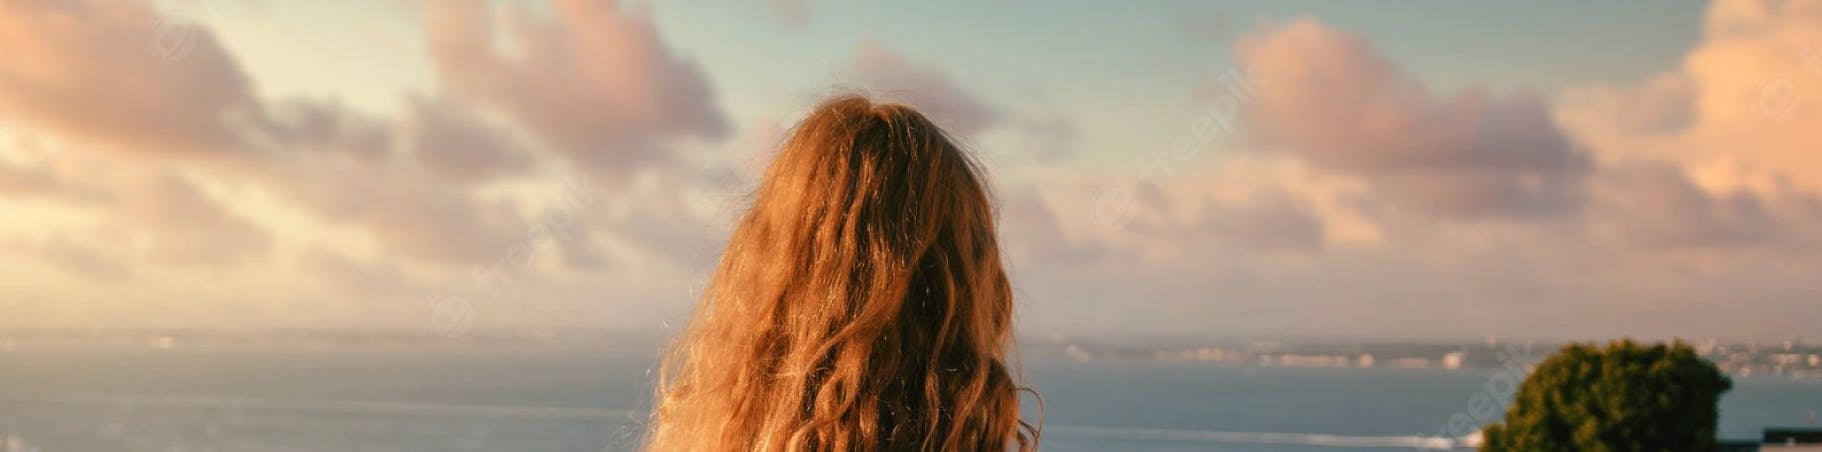 Mulher ruiva de costas olhando para o oceano